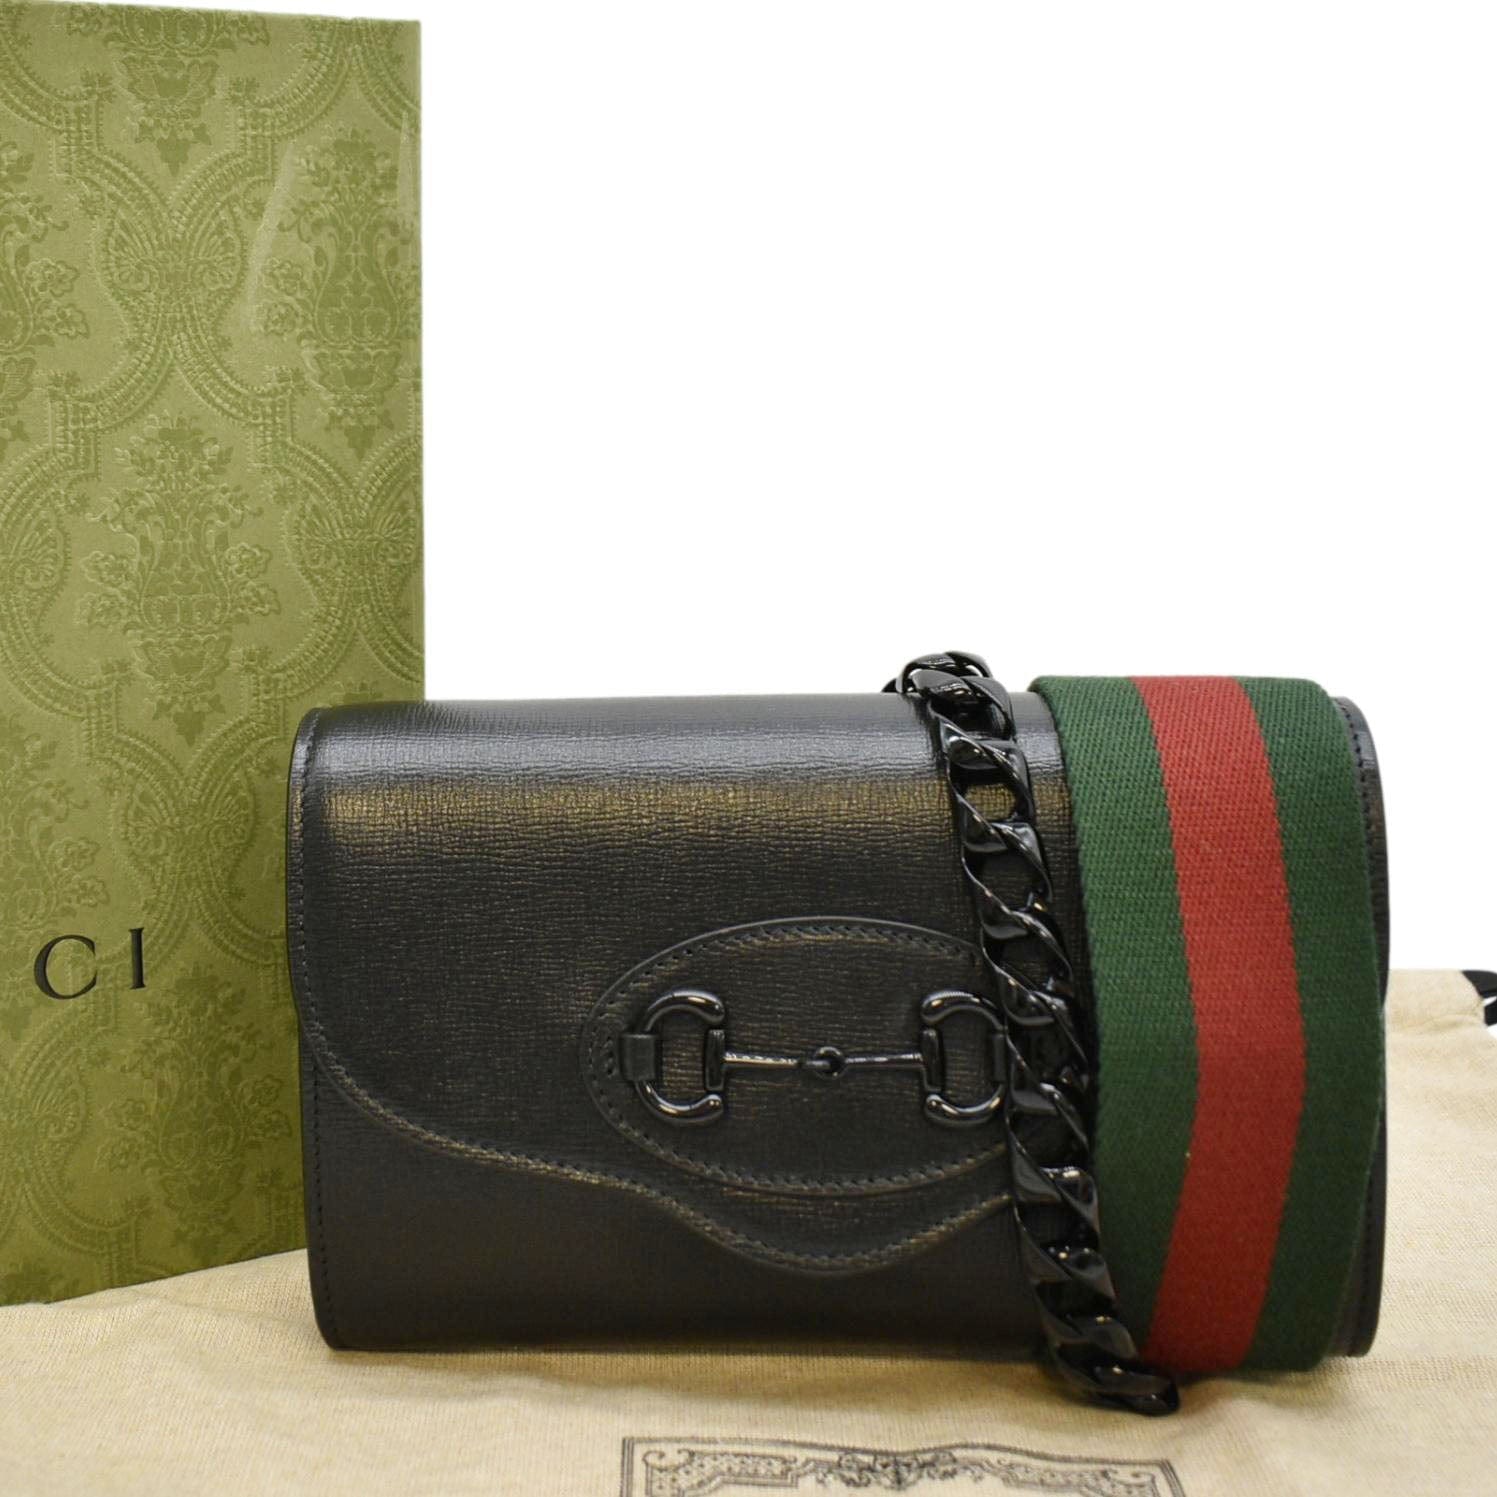 Gucci Horsebit 1955 mini bag, Black